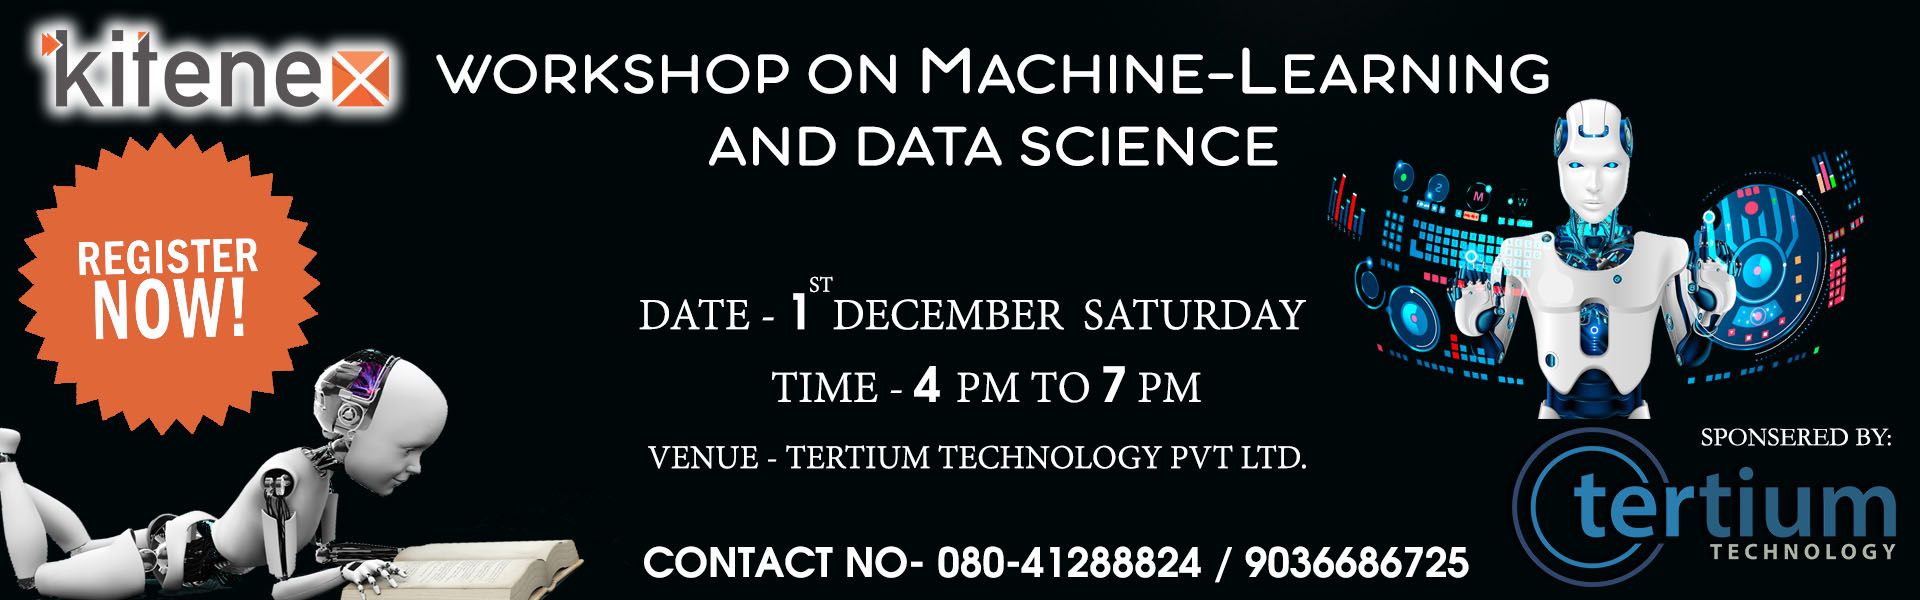 Workshop on Machine Learning and Data Science, Bangalore, Karnataka, India